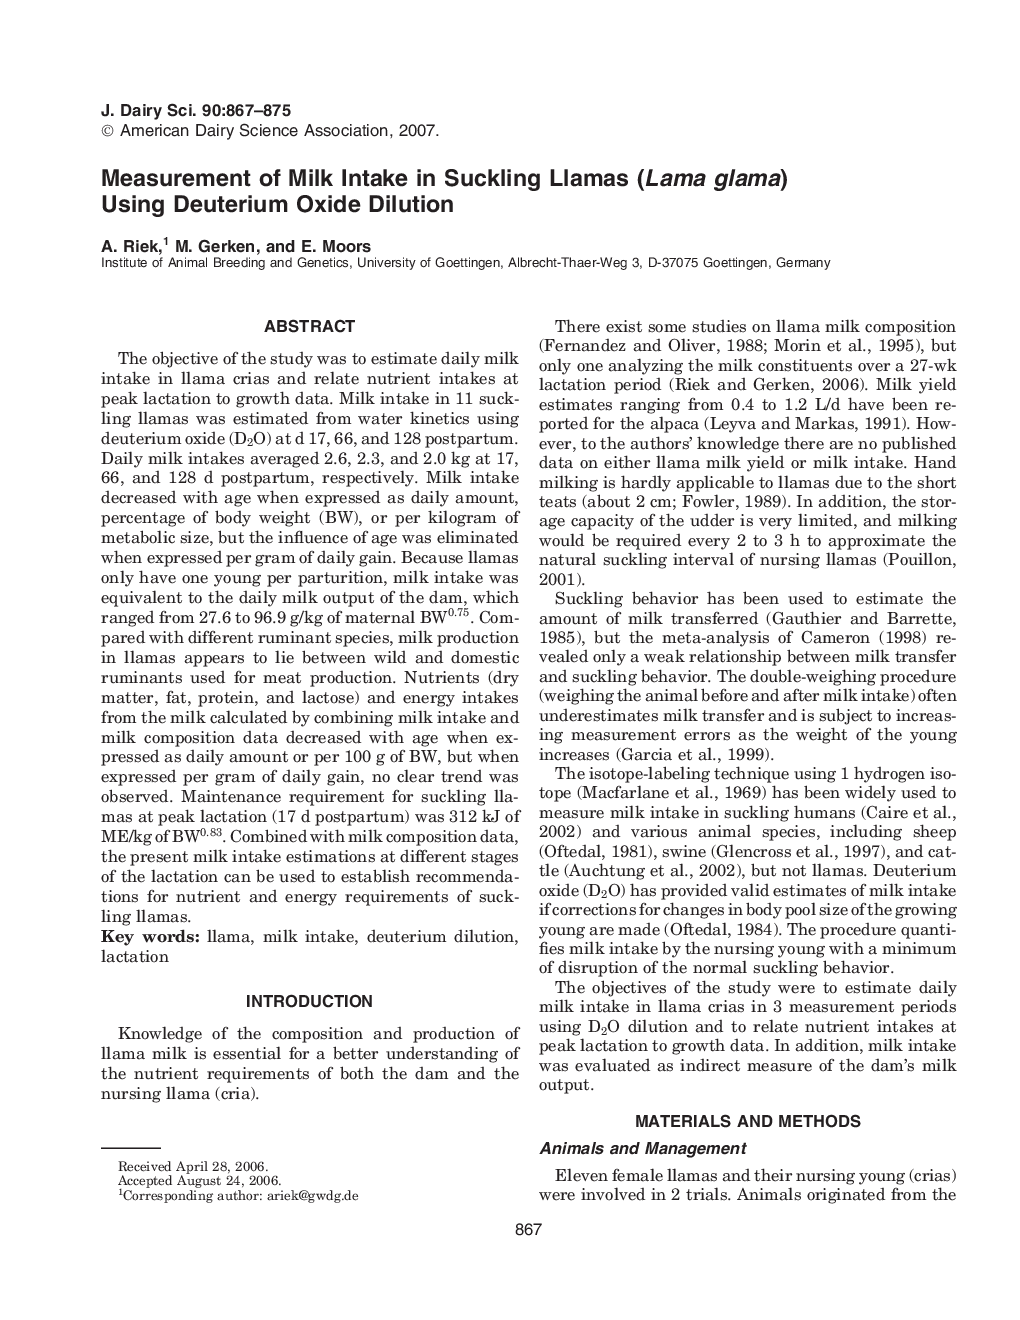 Measurement of Milk Intake in Suckling Llamas (Lama glama) Using Deuterium Oxide Dilution